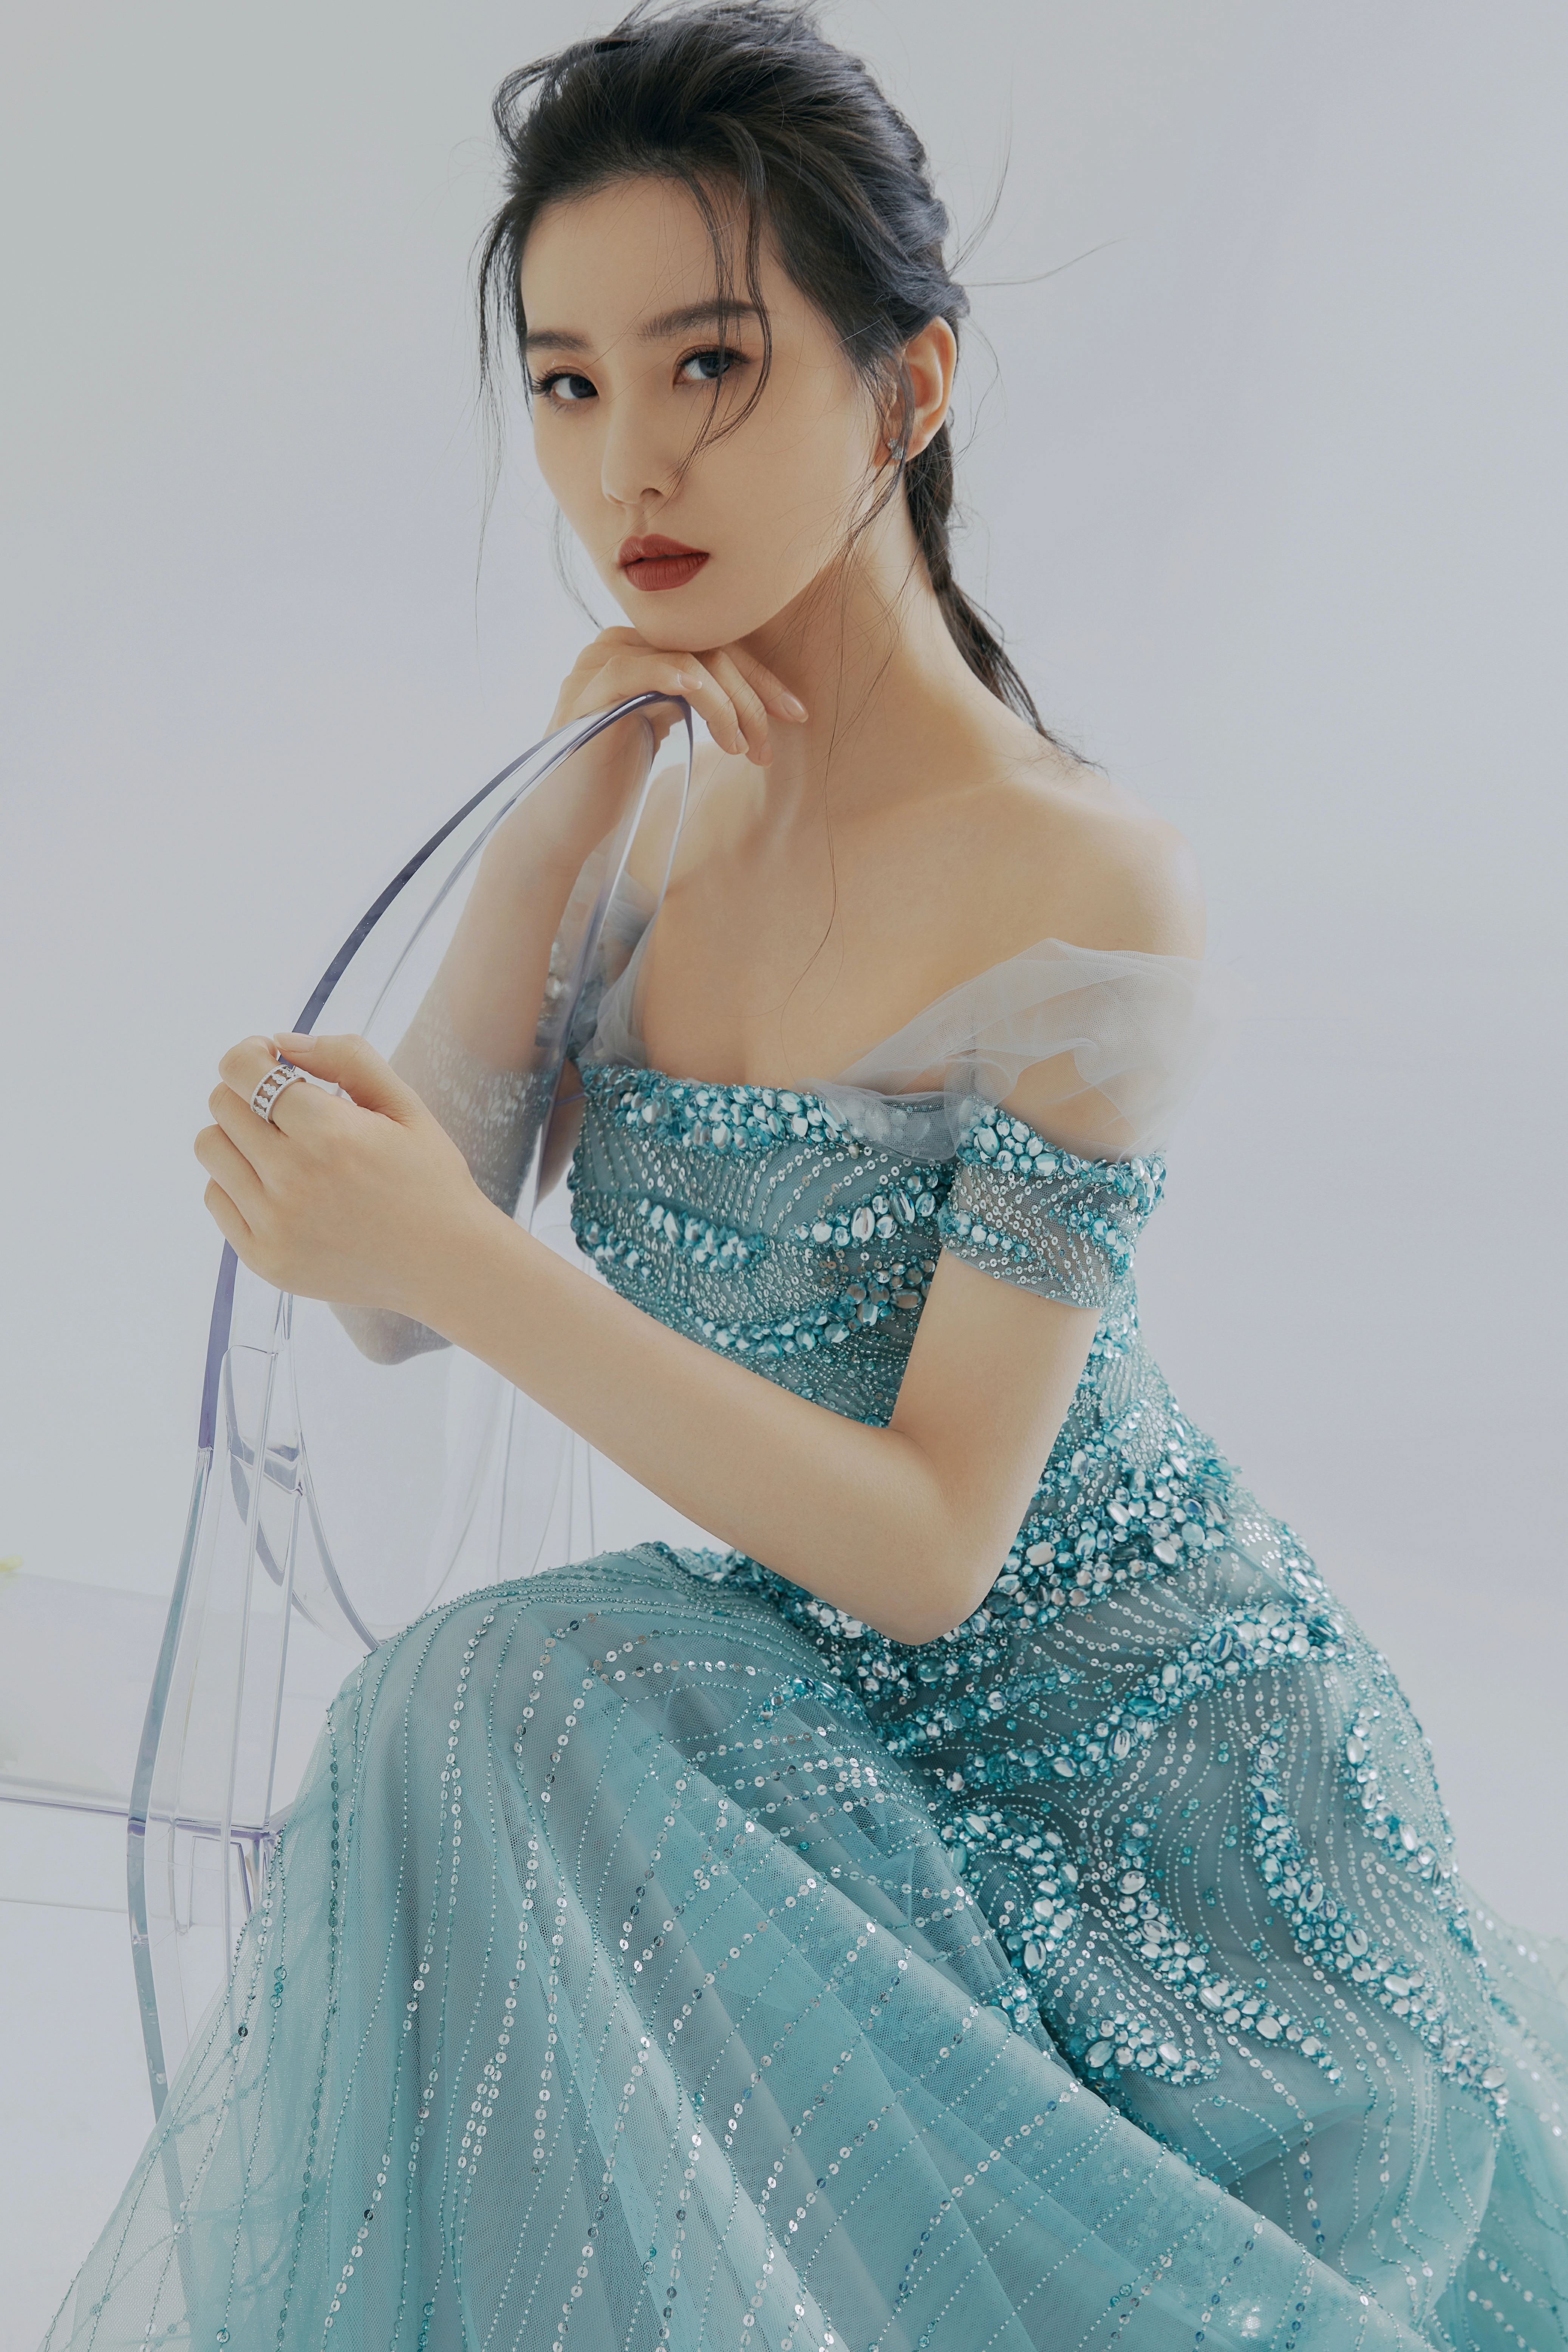 刘诗诗蓝色钻石长裙温柔优雅 大秀完美肩颈线条气质迷人,